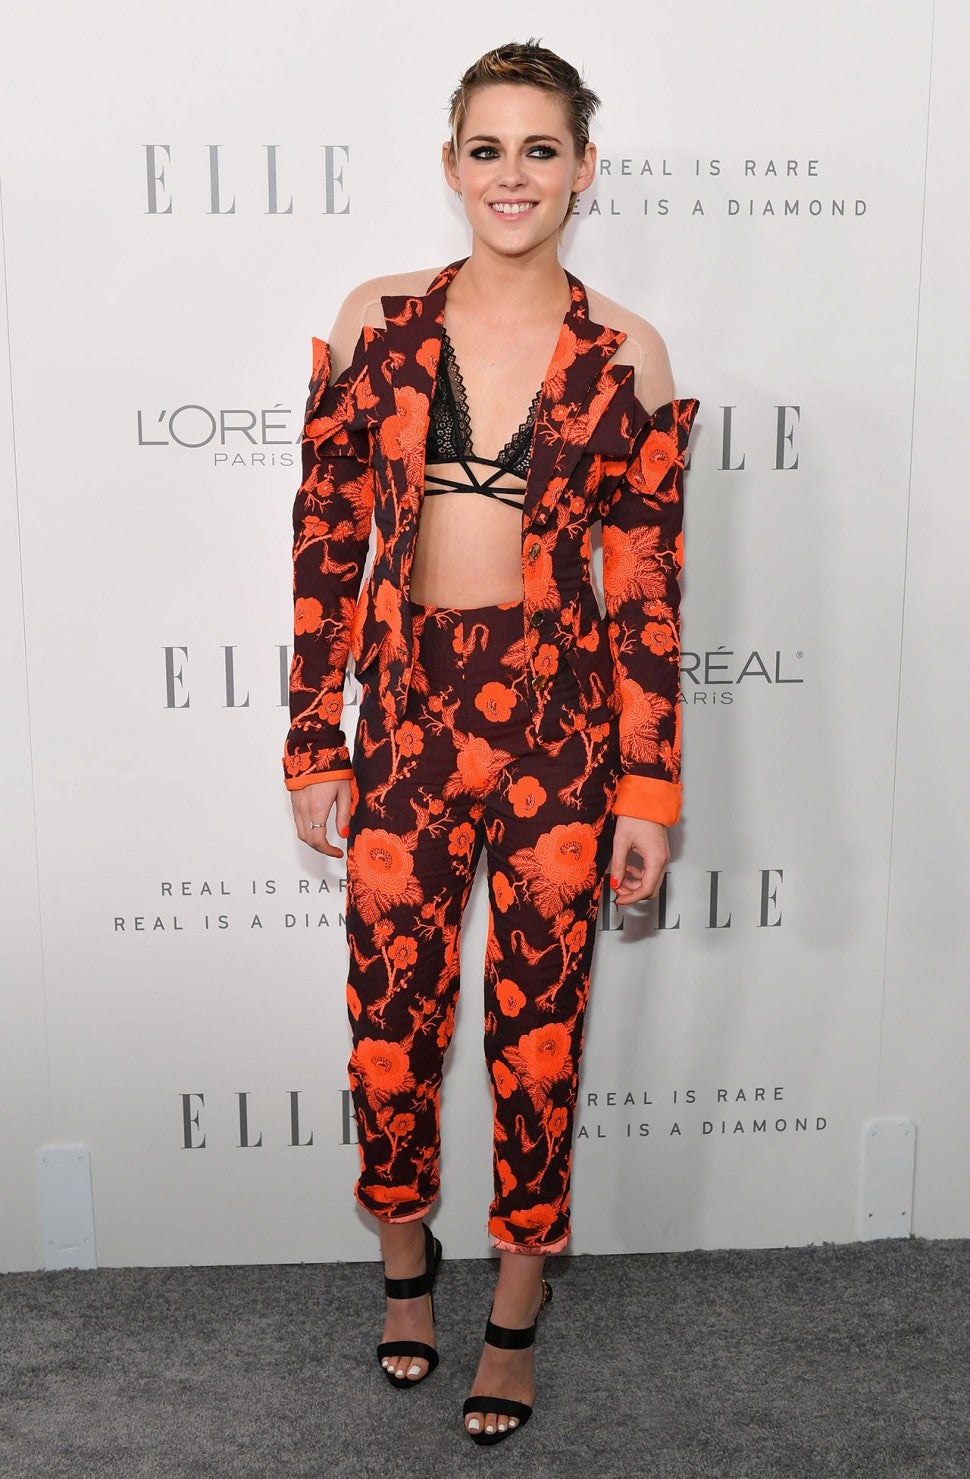 Kristen Stewart at Elle event